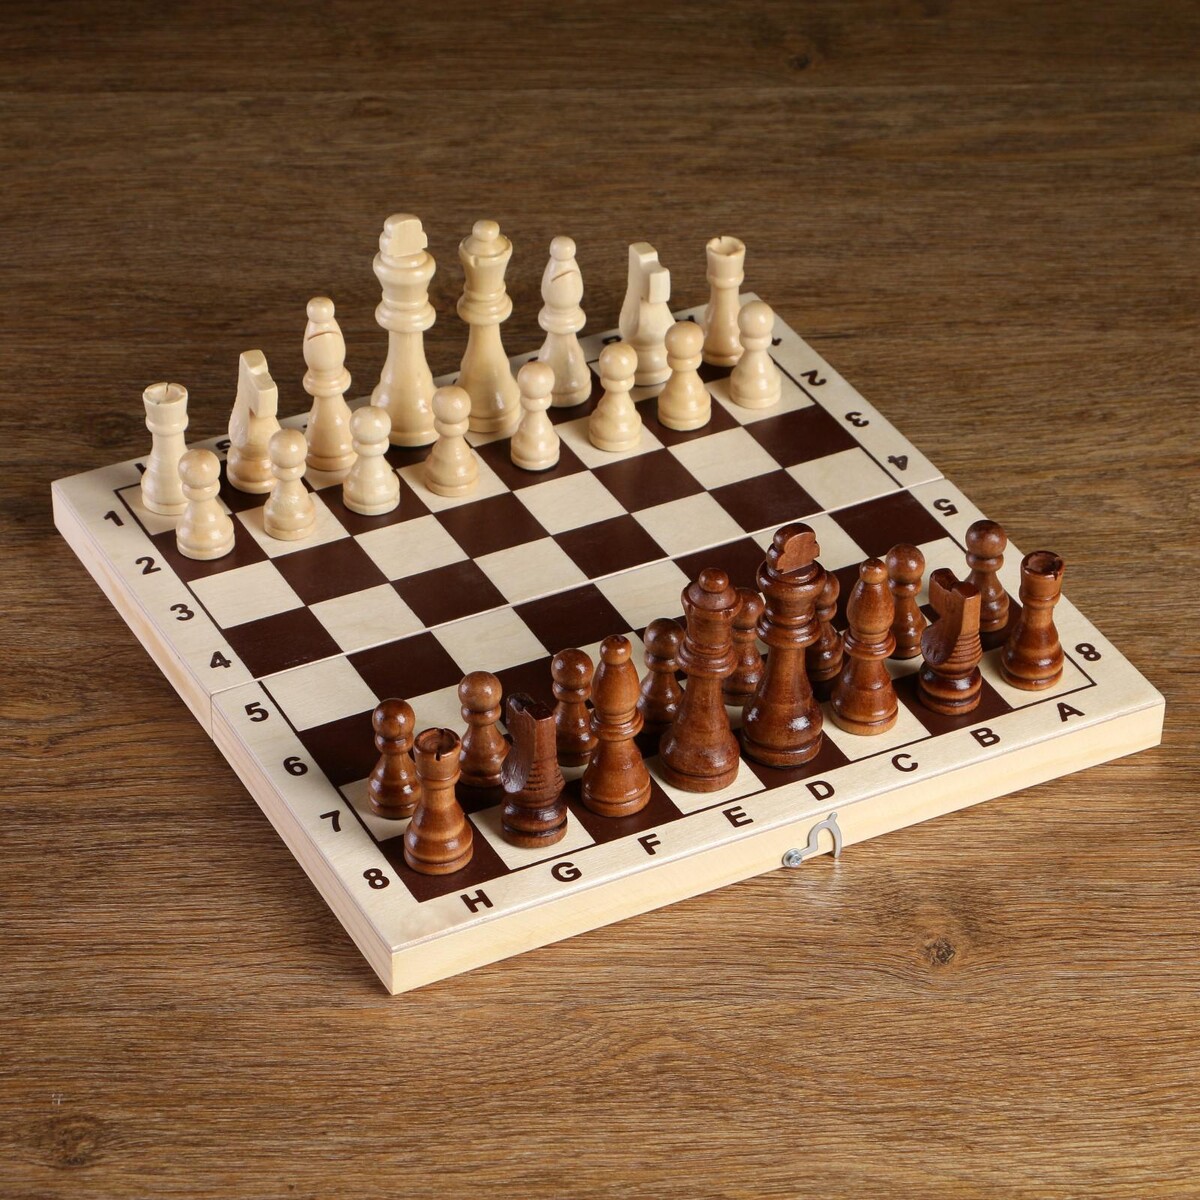 Шахматные фигуры, король h-8 см, пешка h-4 см имельда и король гоблинов